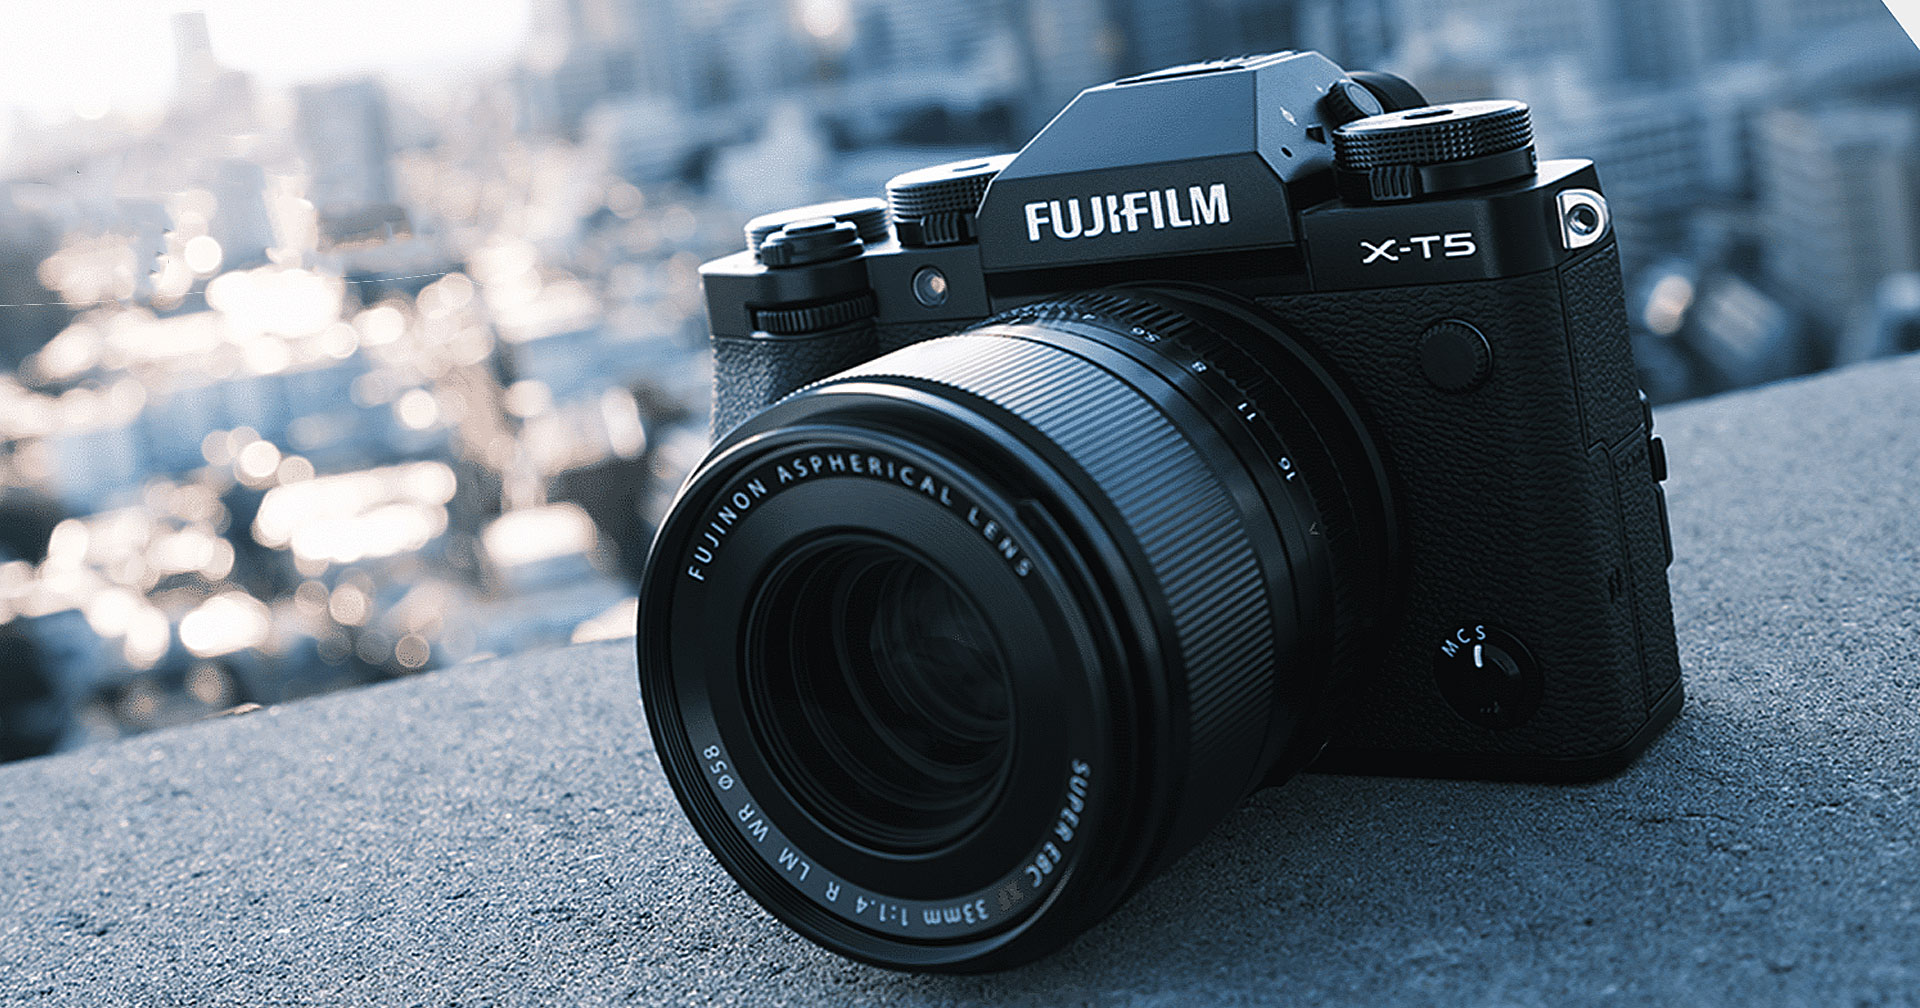 กระแสดีจัด! FUJIFILM X-T5 กล้องมิเรอร์เลสดีไซน์หล่อ ขาดตลาดในประเทศญี่ปุ่น